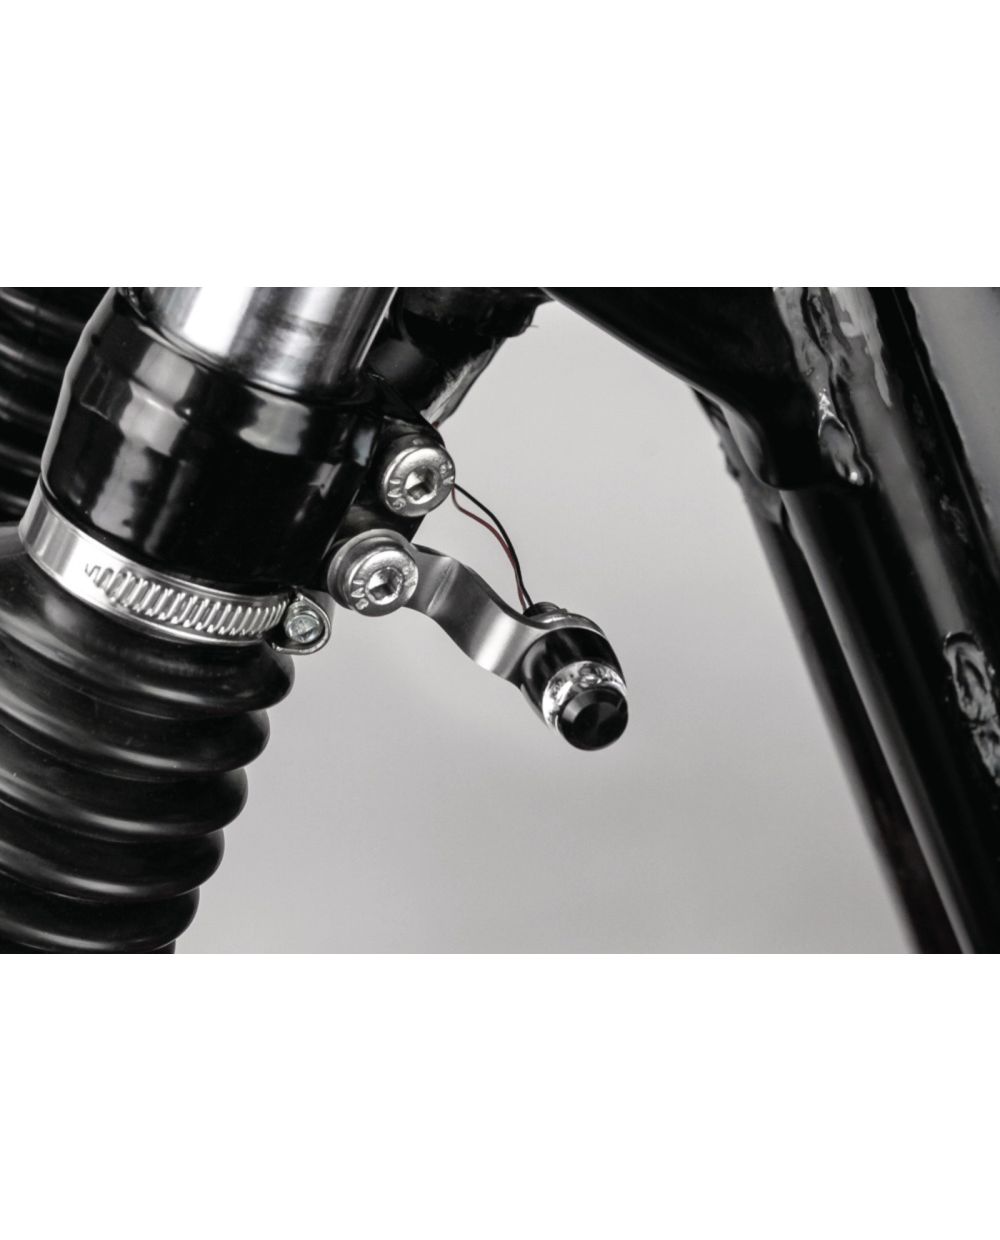 Motorrad 35-51mm Metall Vordere Gabelhalterung Klemme Blinker